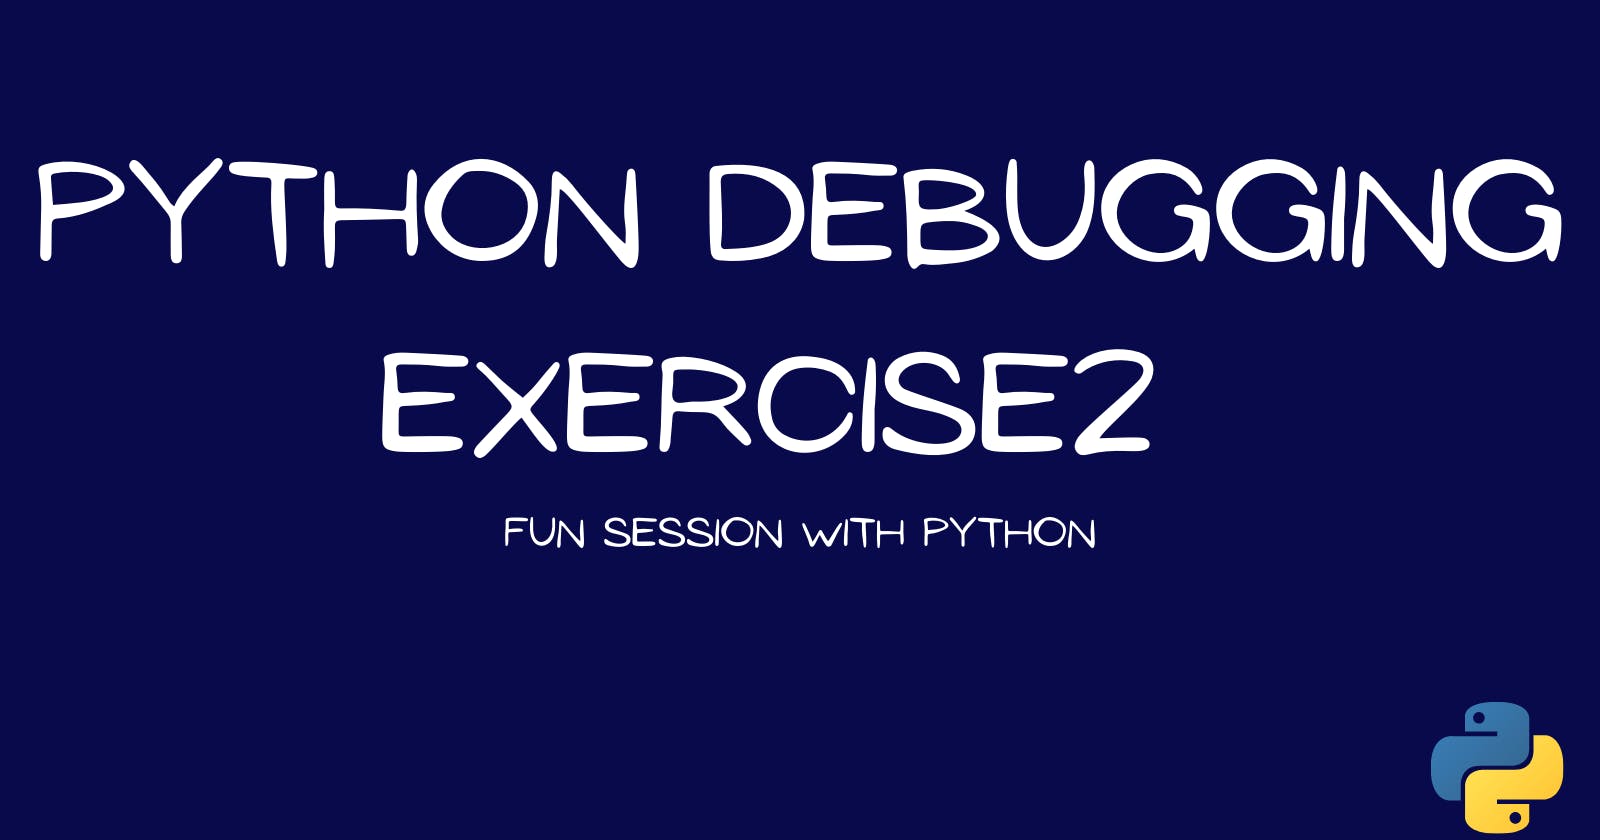 Python Debugging Exercise 2